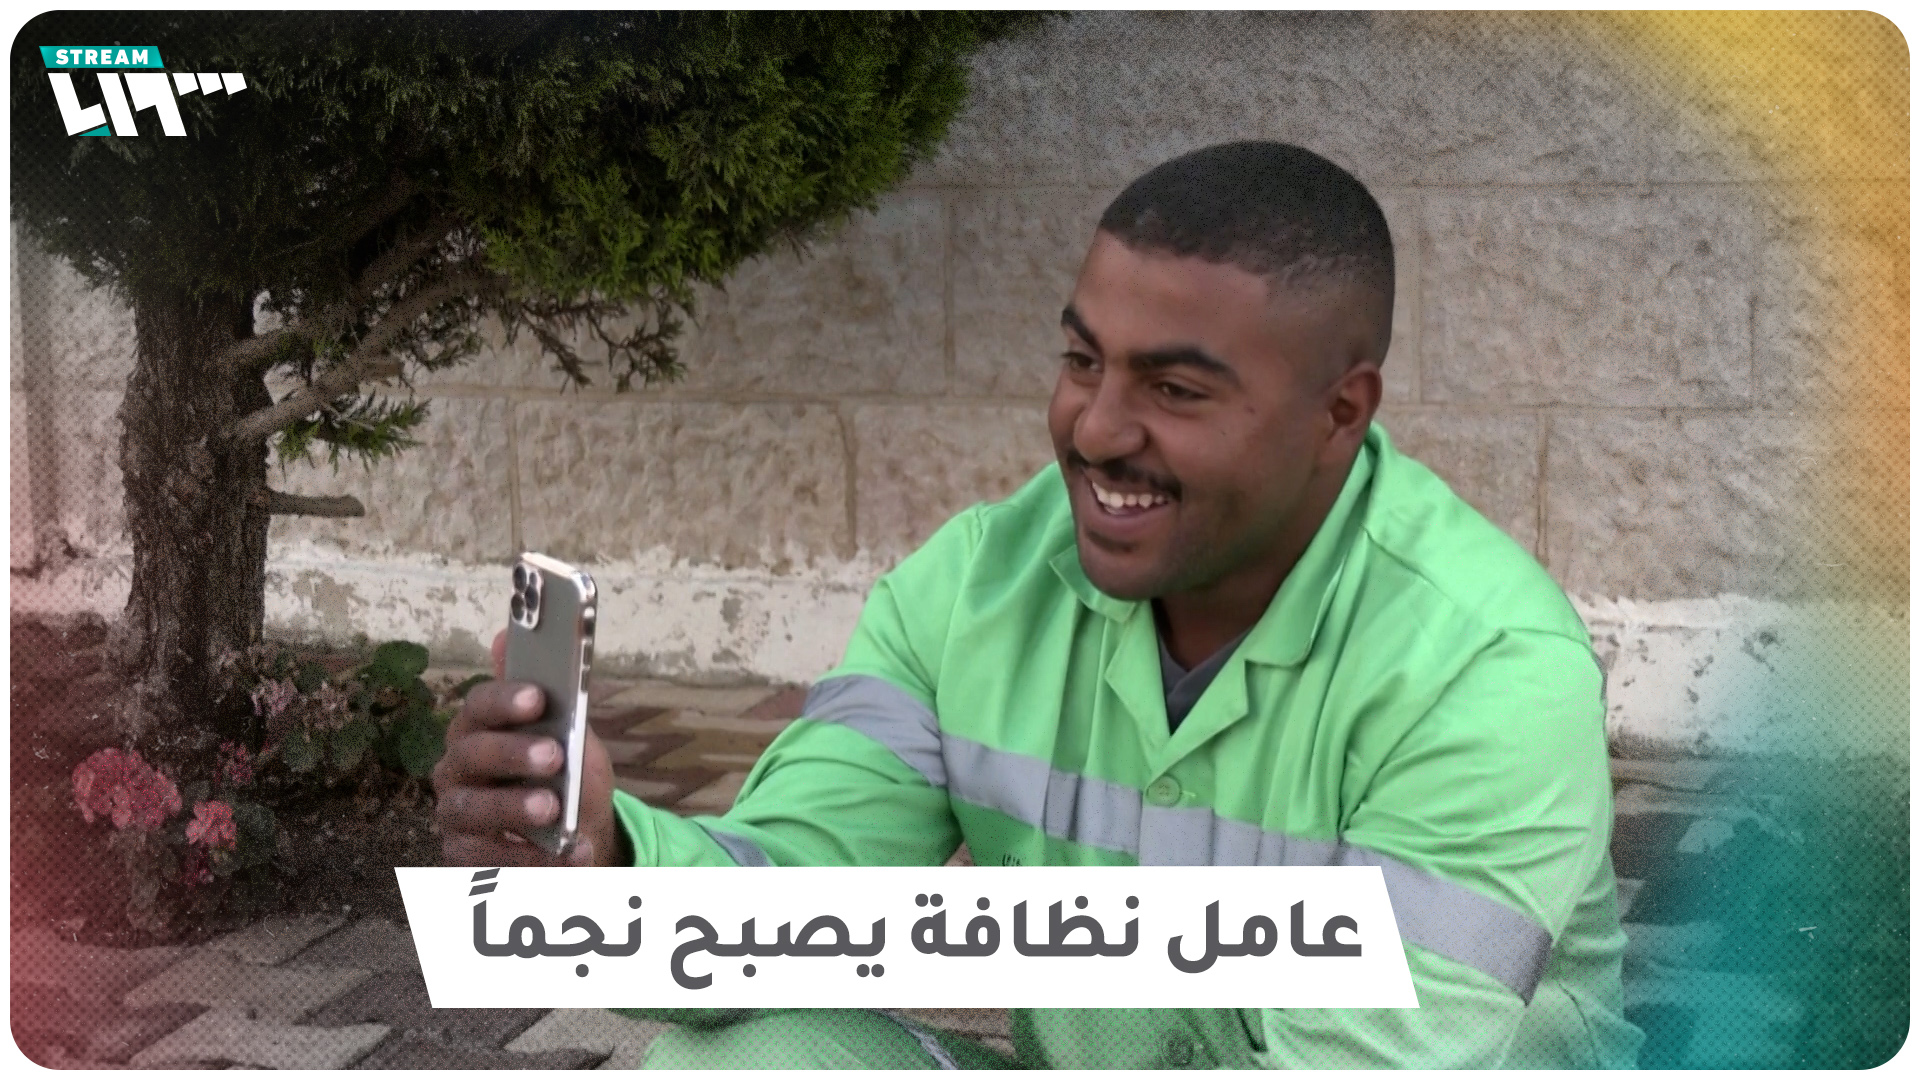 عامل نظافة أردني يتحول إلى نجم على مواقع التواصل